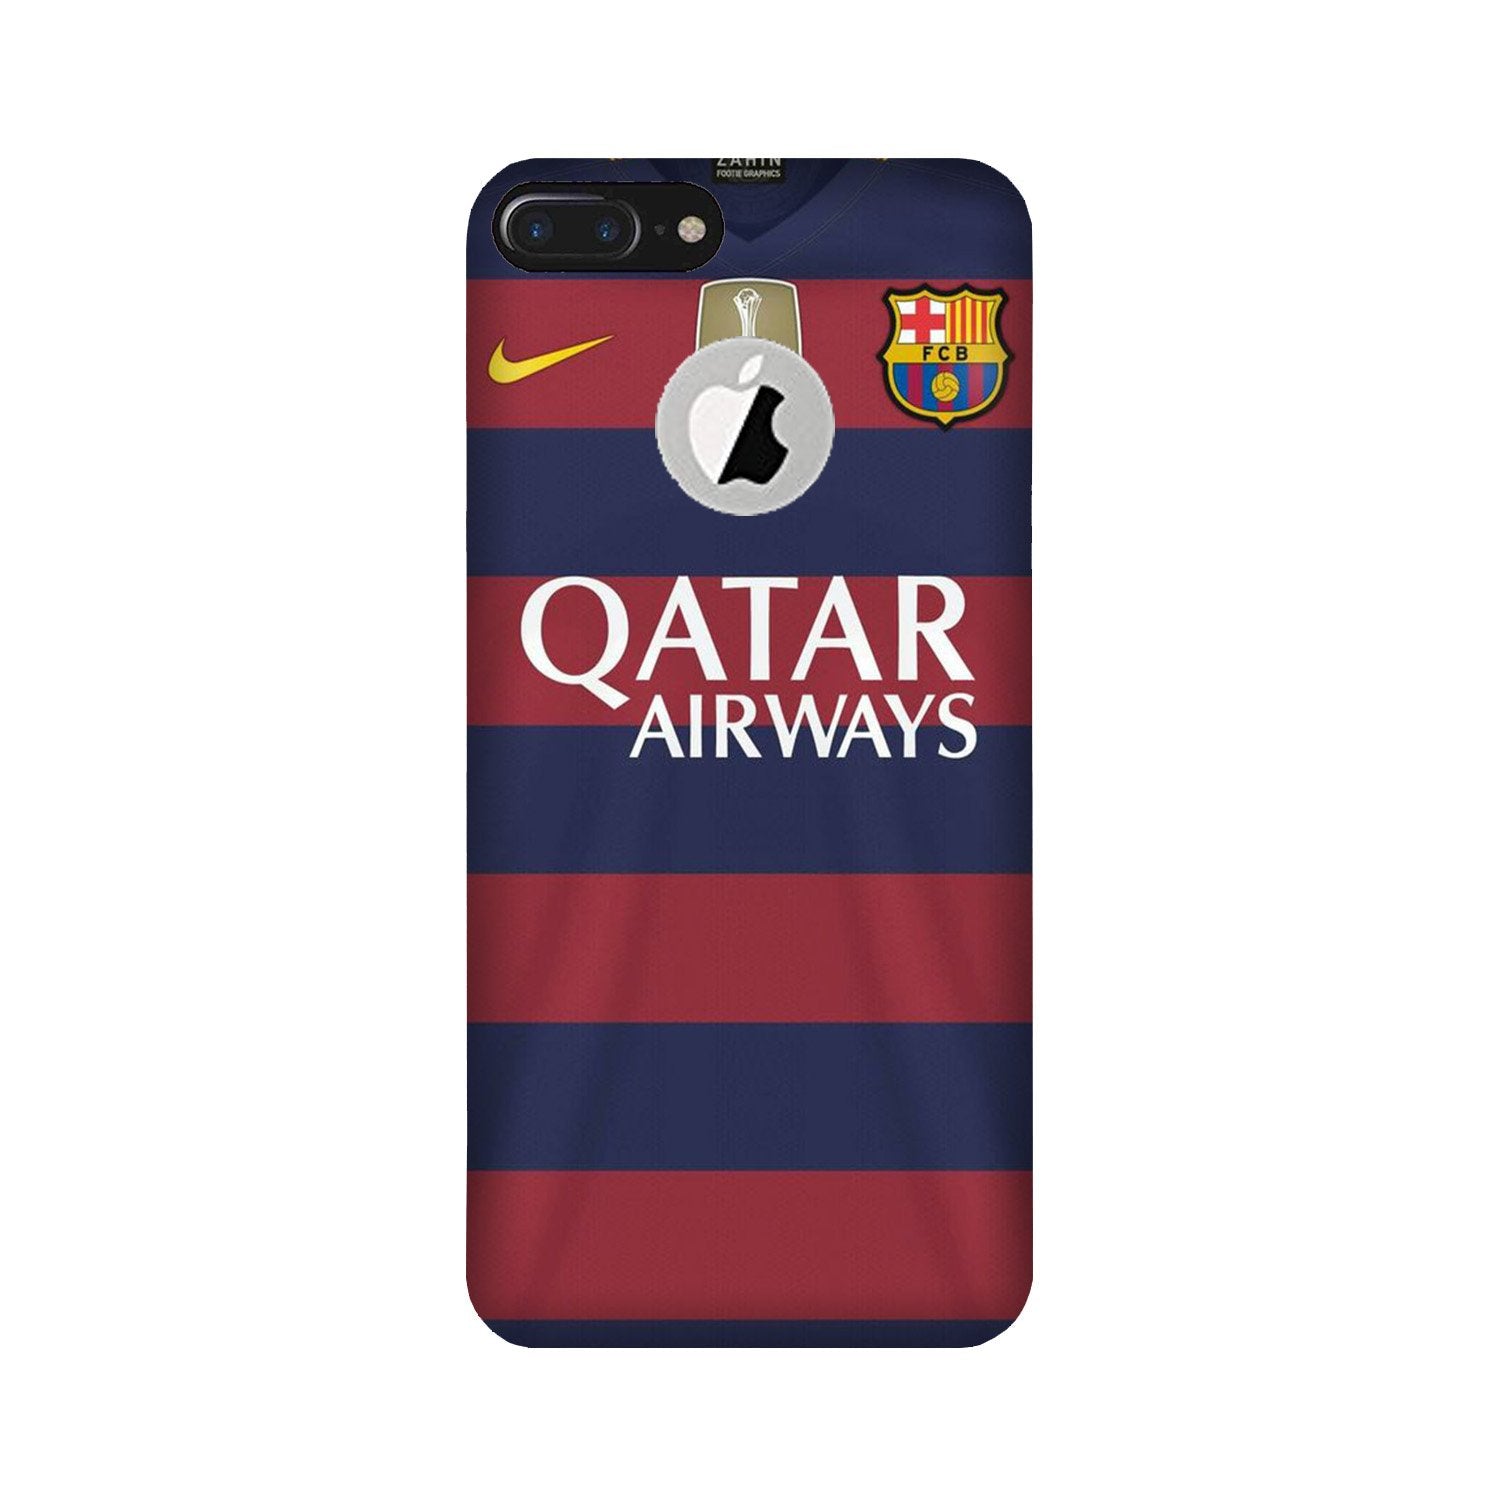 Qatar Airways Case for iPhone 7 Plus logo cut  (Design - 160)